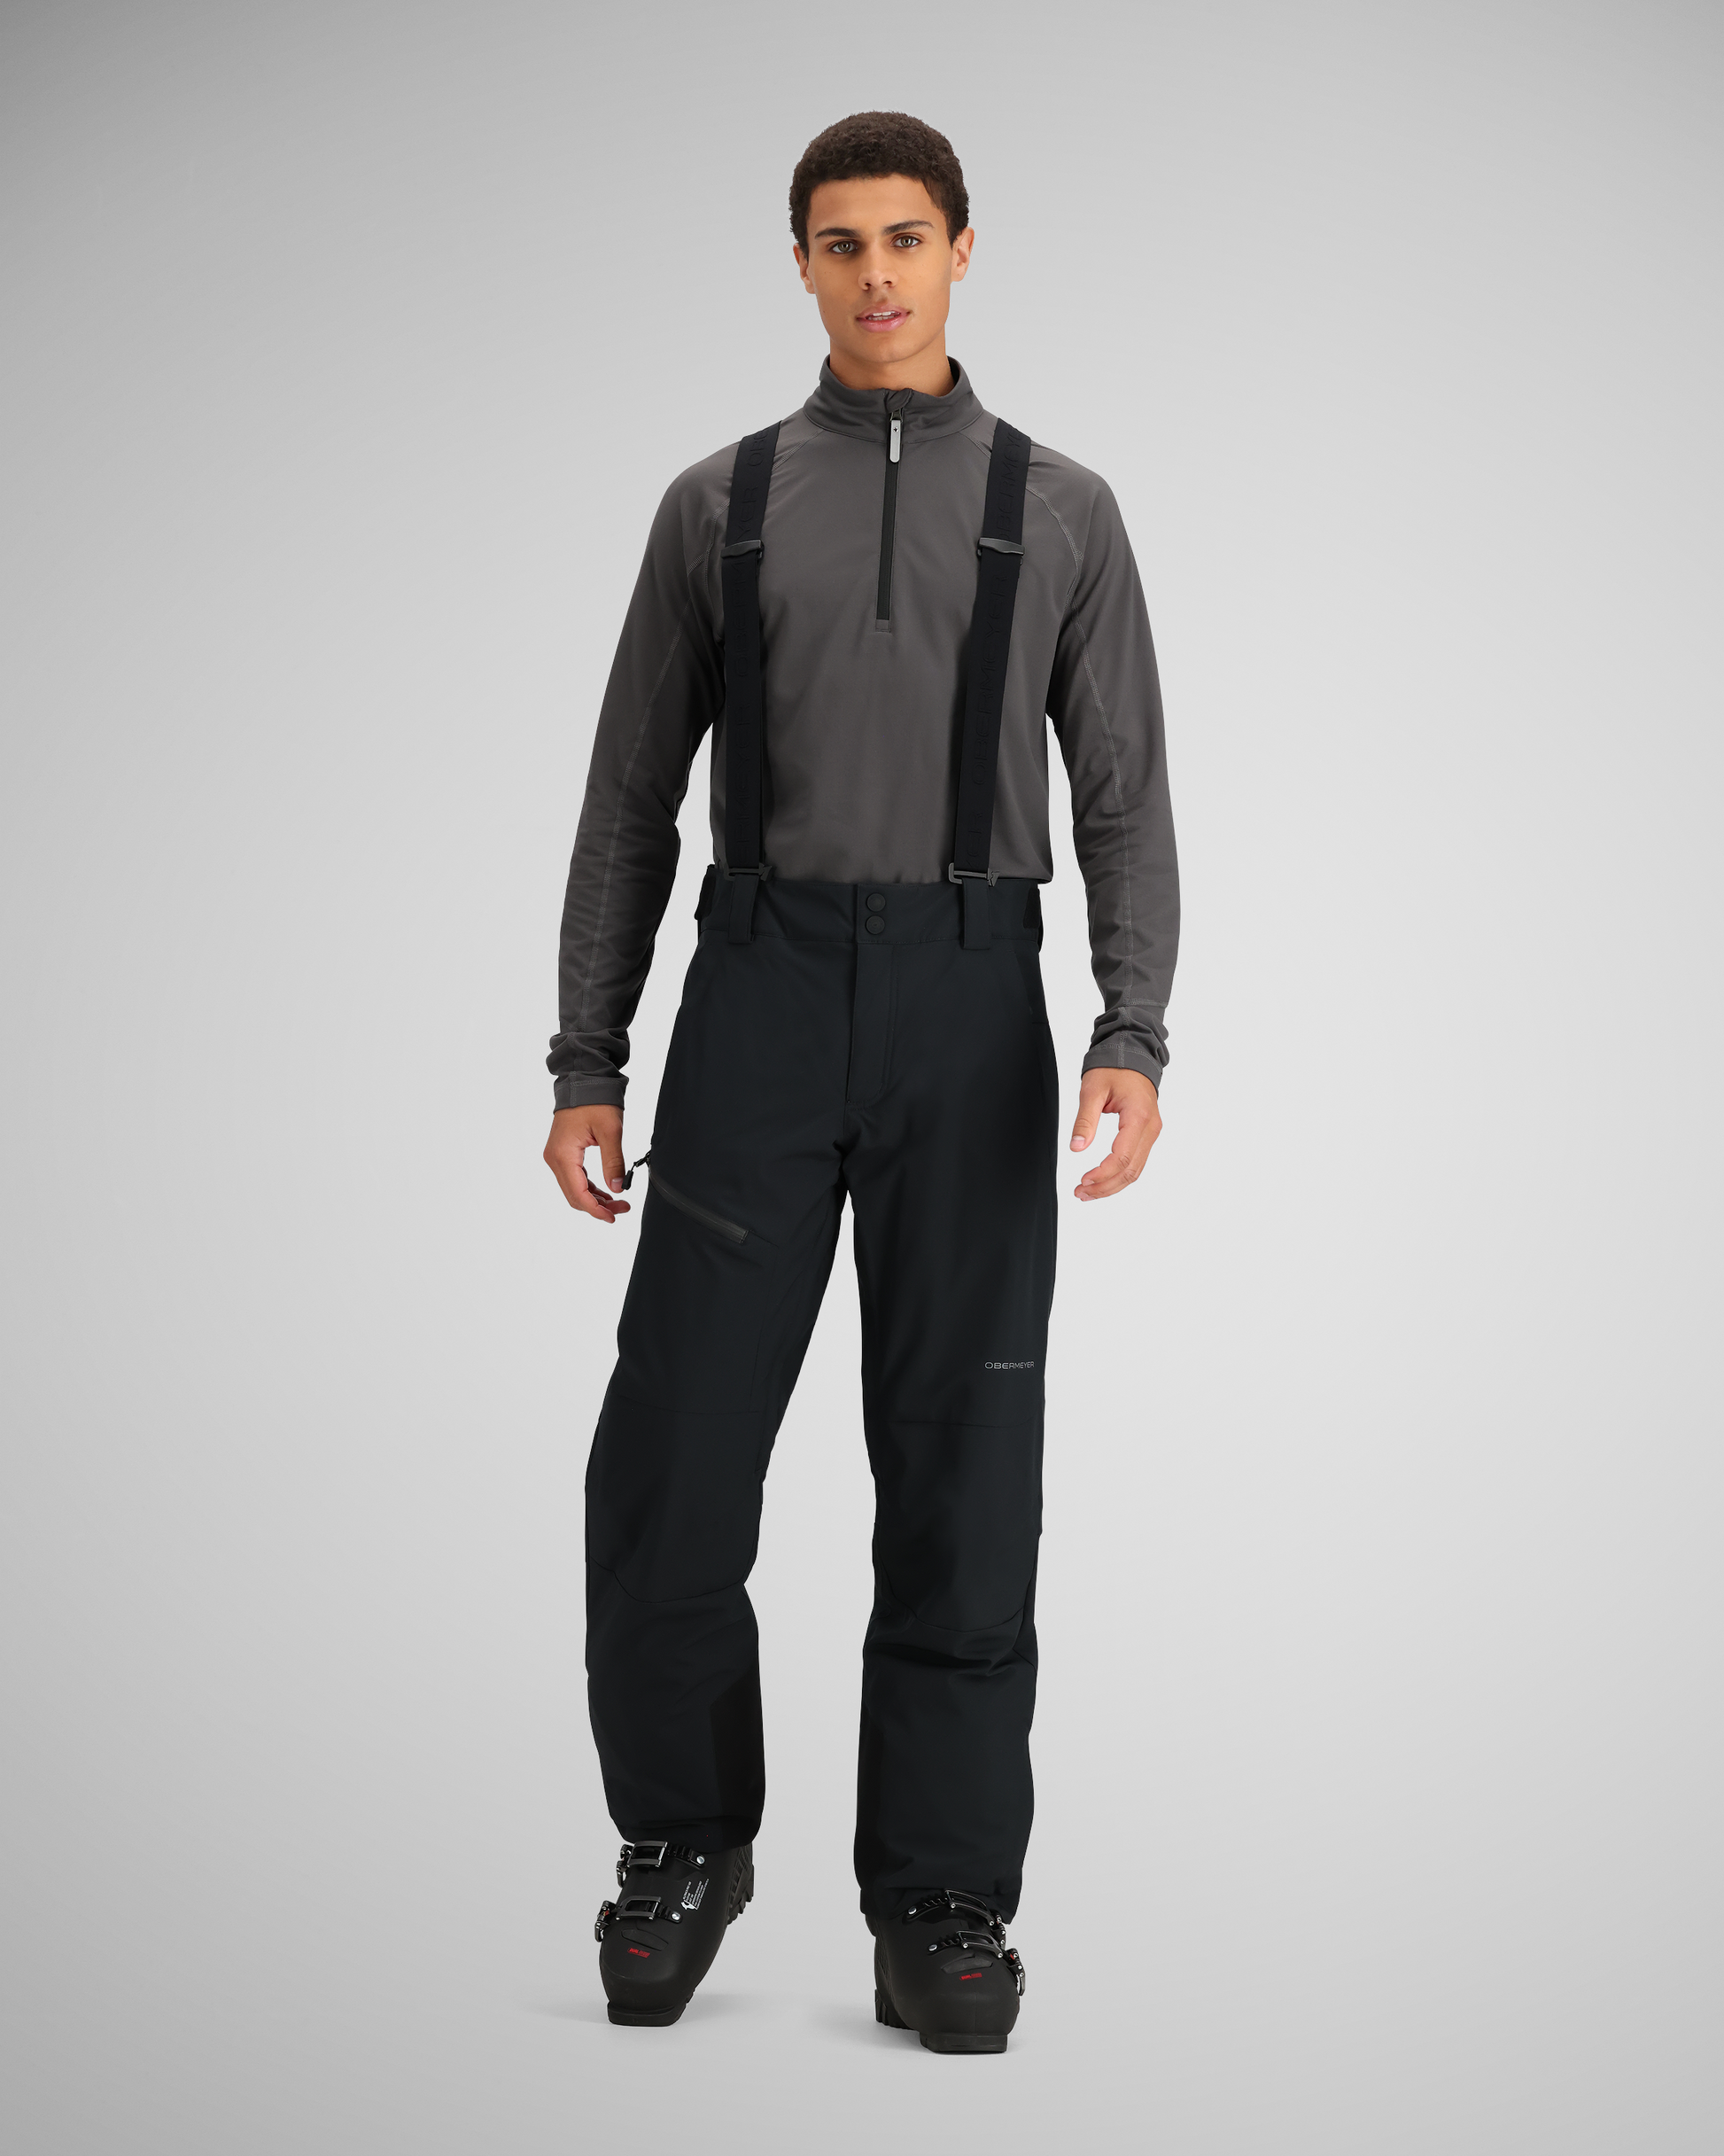 Tek Gear Black Active Pants Size S - 55% off